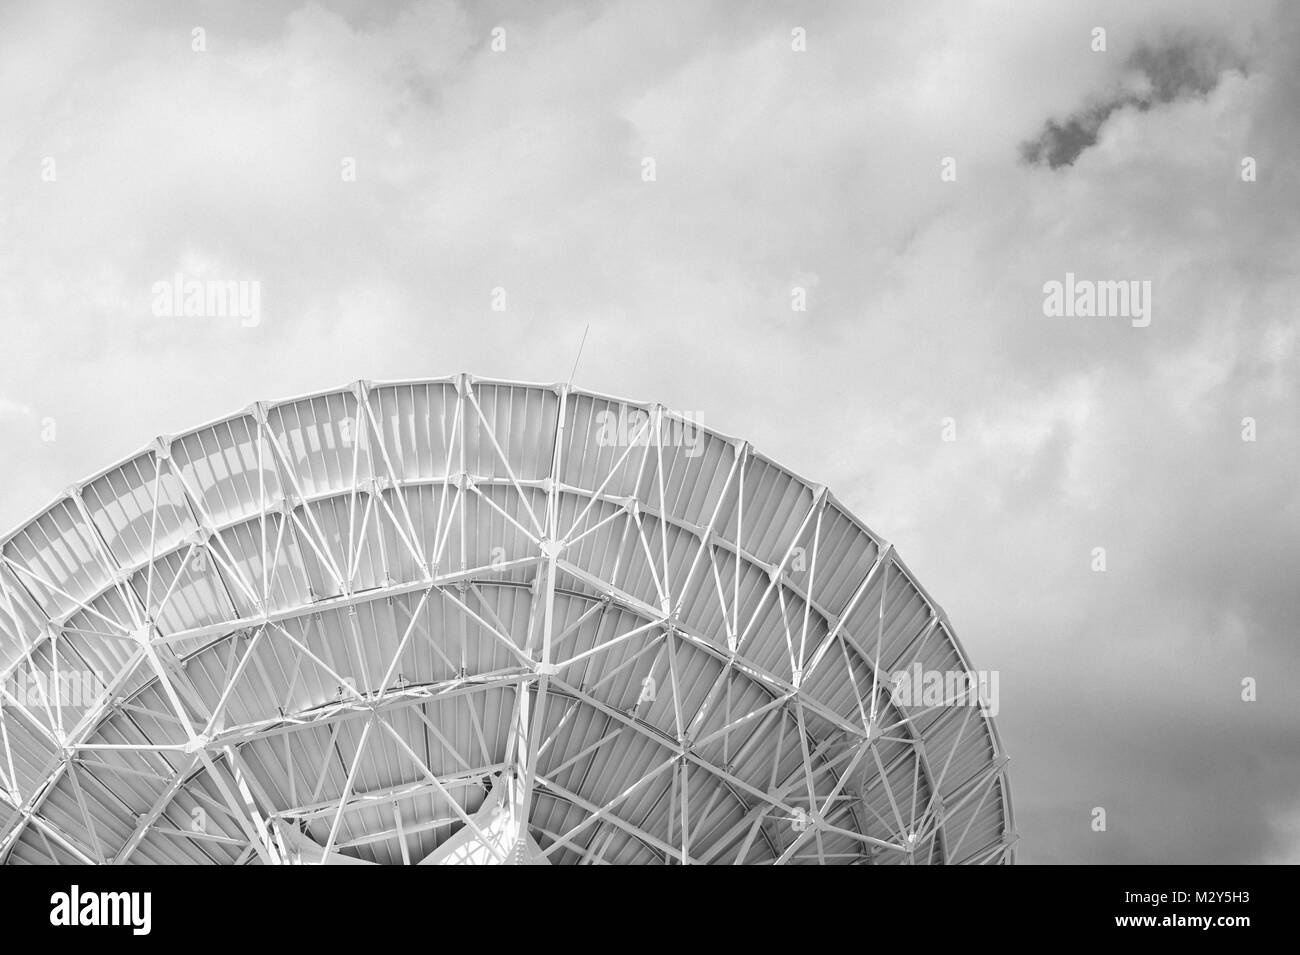 Bianco & Nero fotografia di un grande array (VLA) Radio Telescope situato presso il National Radio Astronomy Observatory Sito in Socorro, Nuovo Messico. Foto Stock